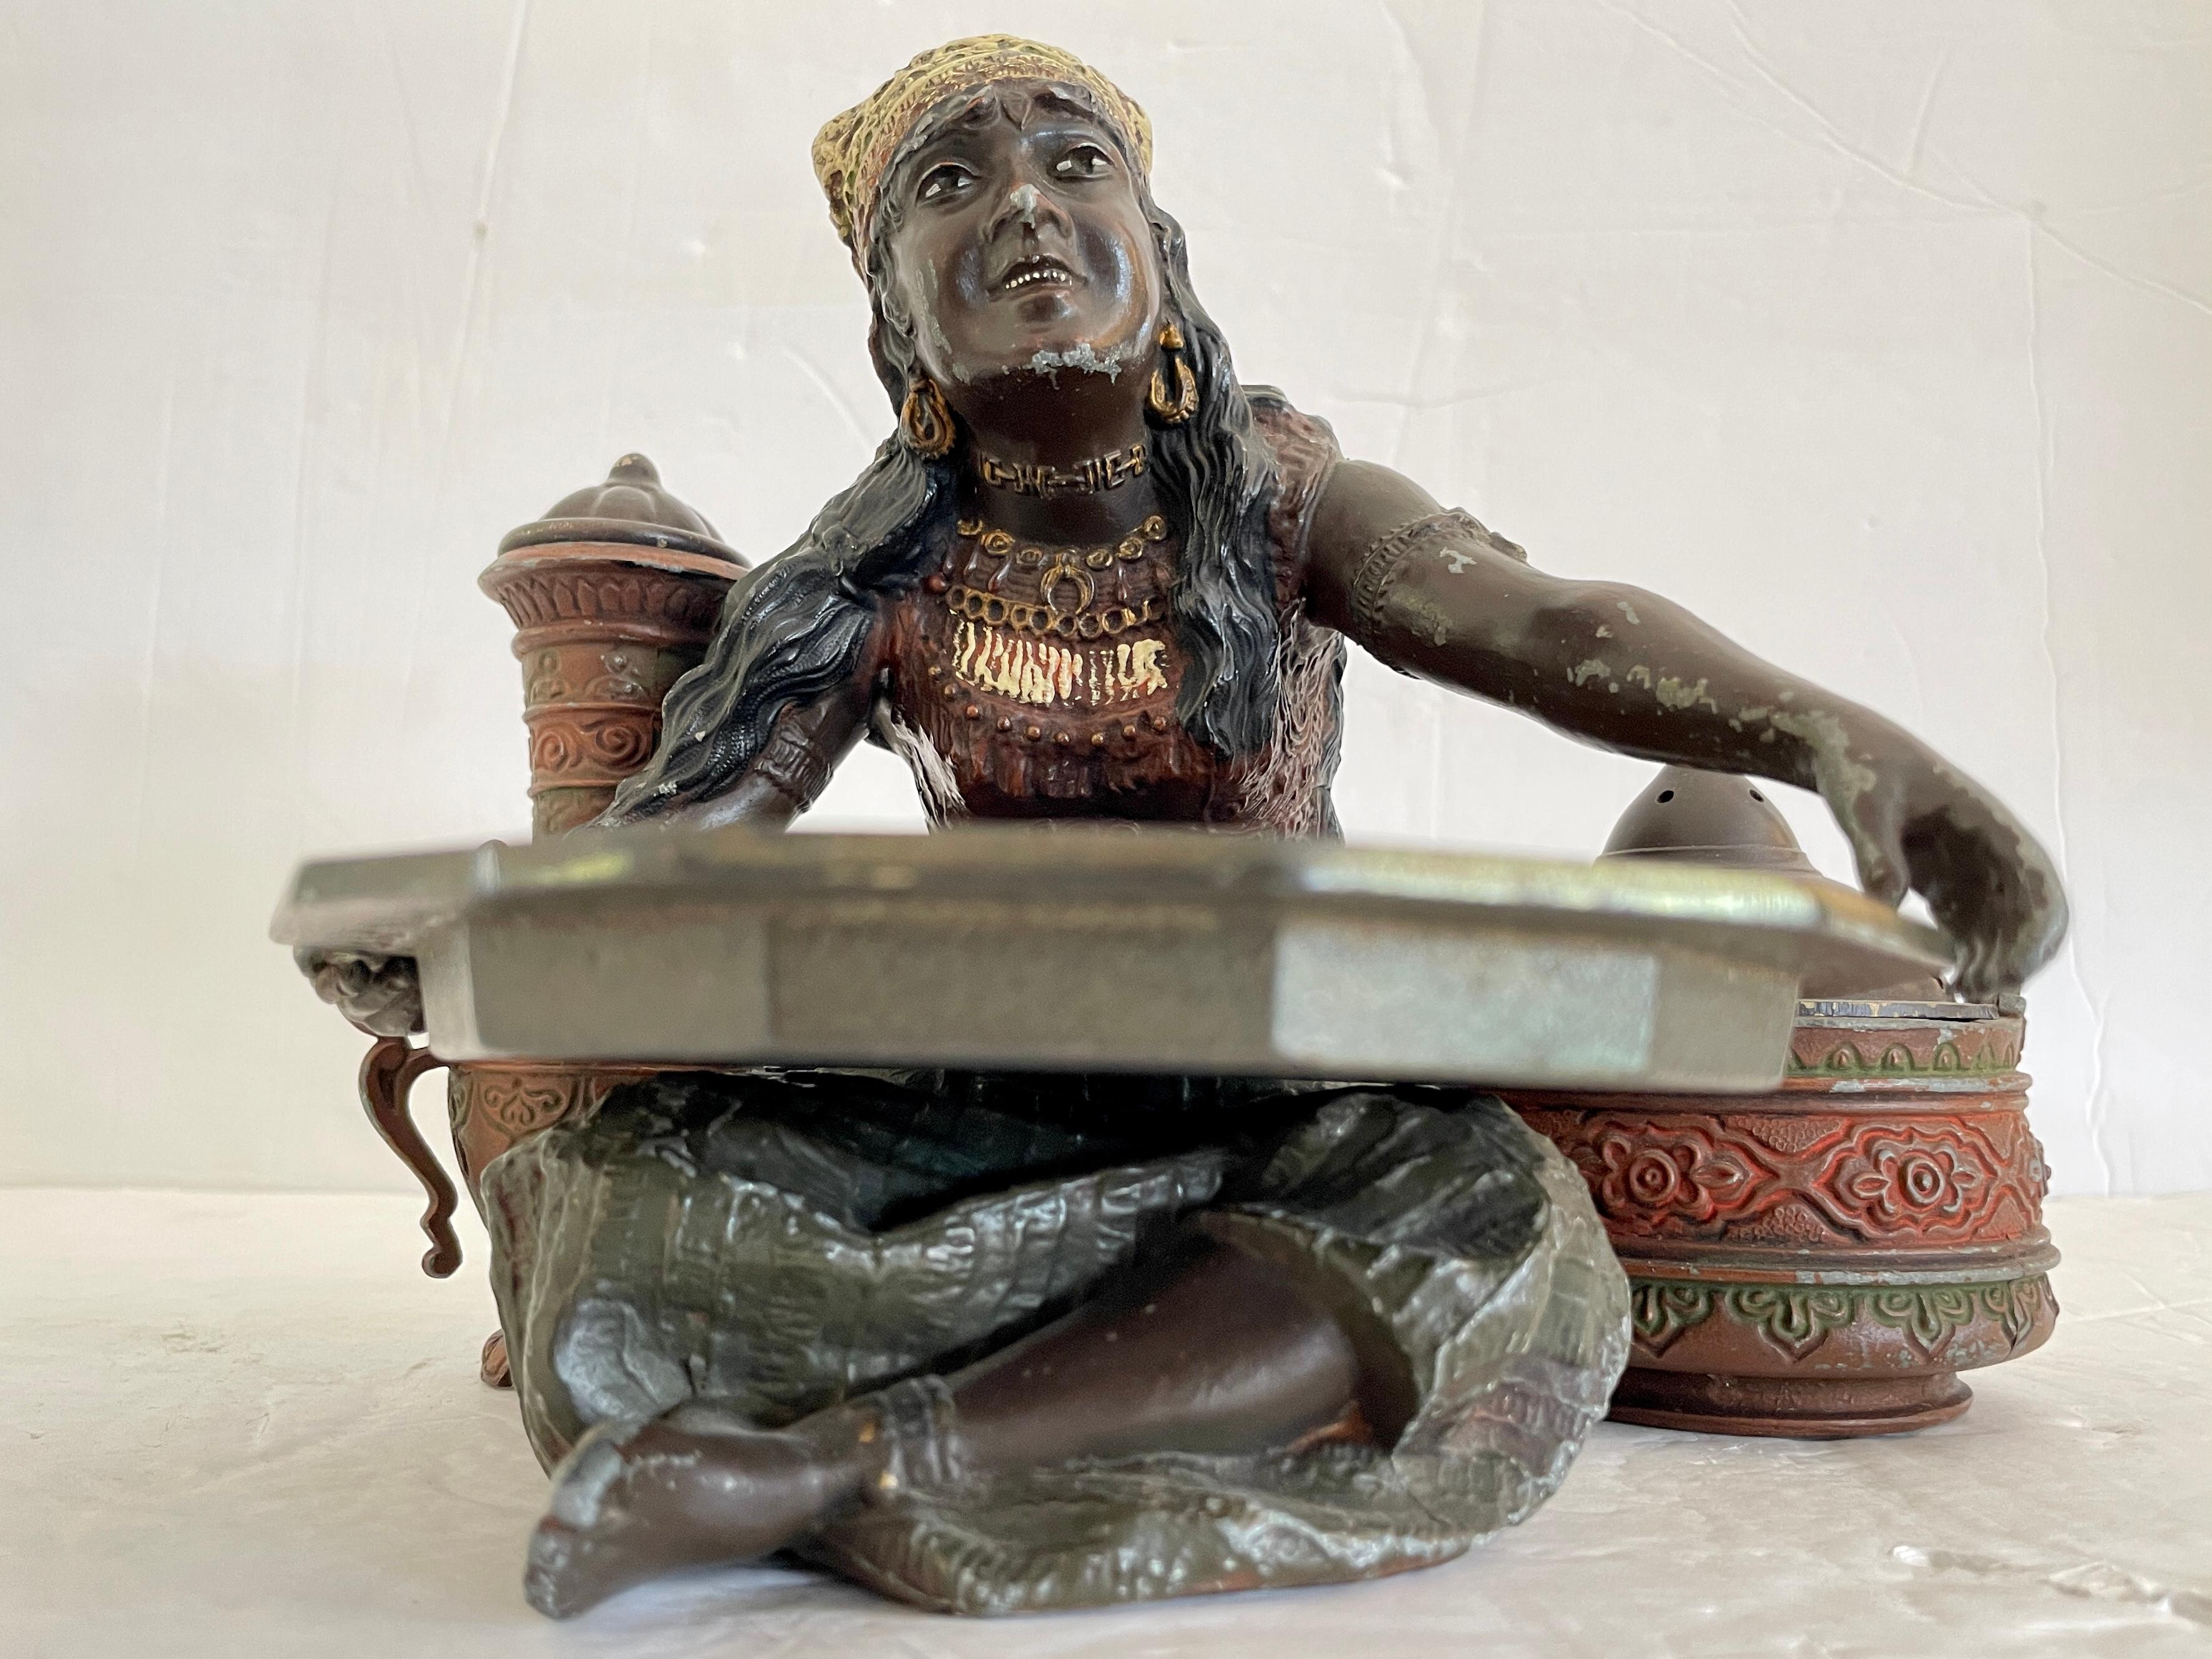 Belle petite figurine avec des pièces amovibles représentant un vendeur de rue nord-africain.